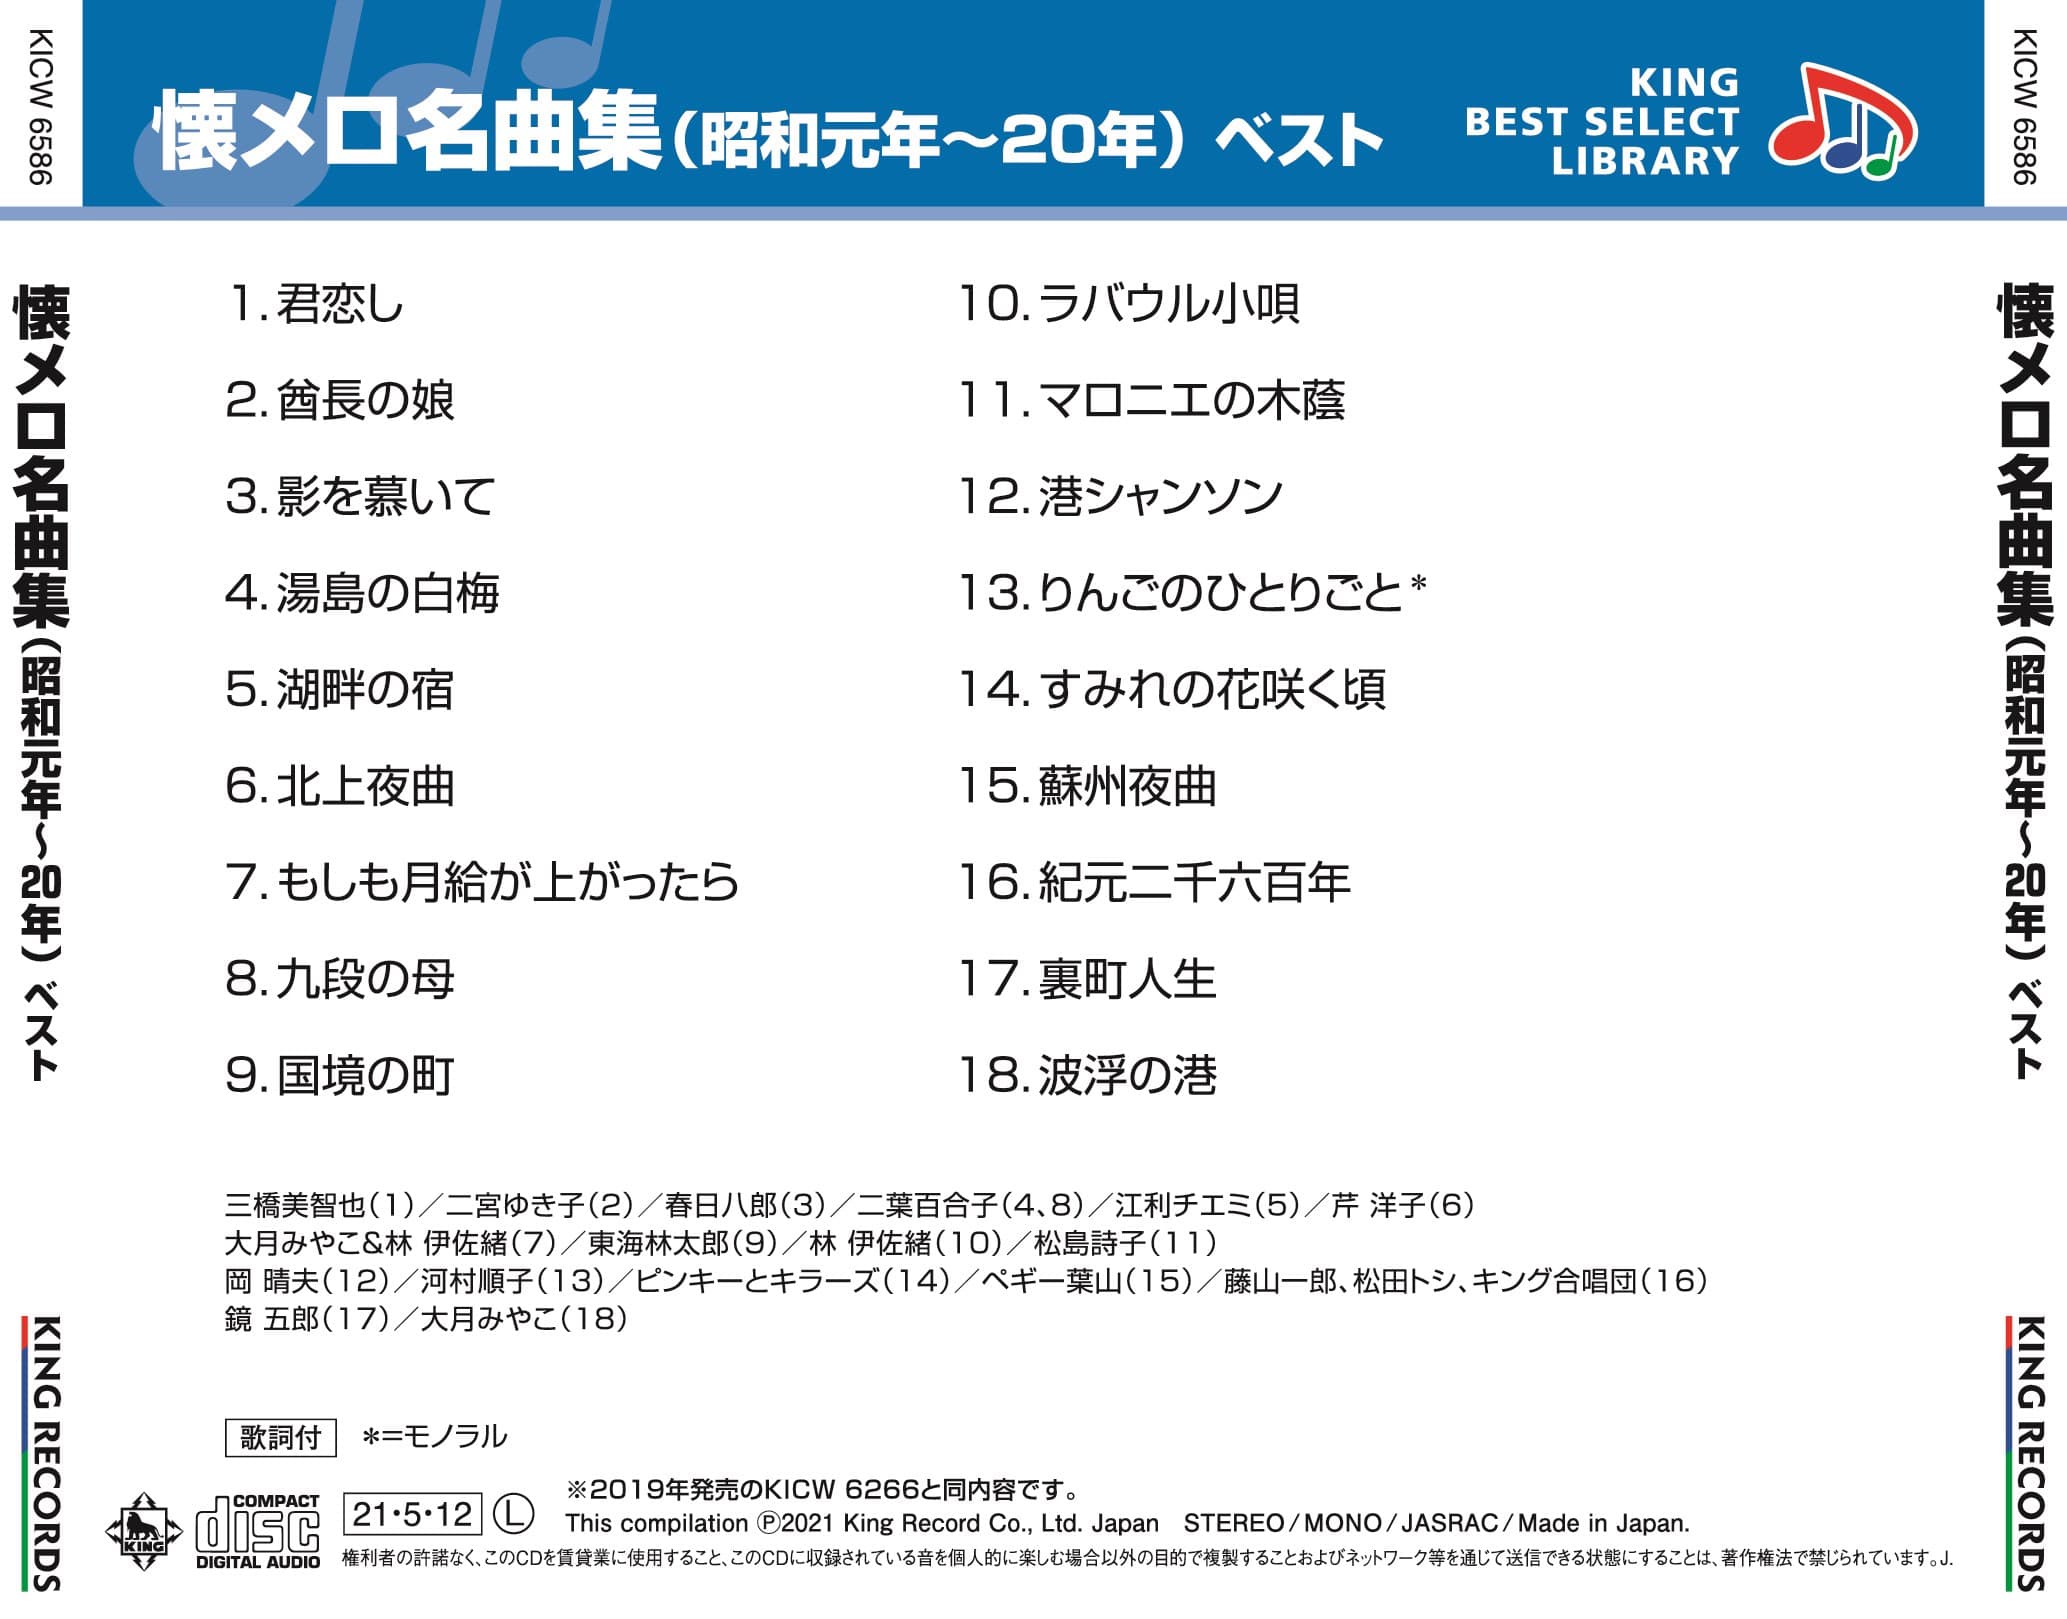 懐メロ名曲集(昭和元年〜20年) ベスト キング・ベスト・セレクト・ライブラリー2021